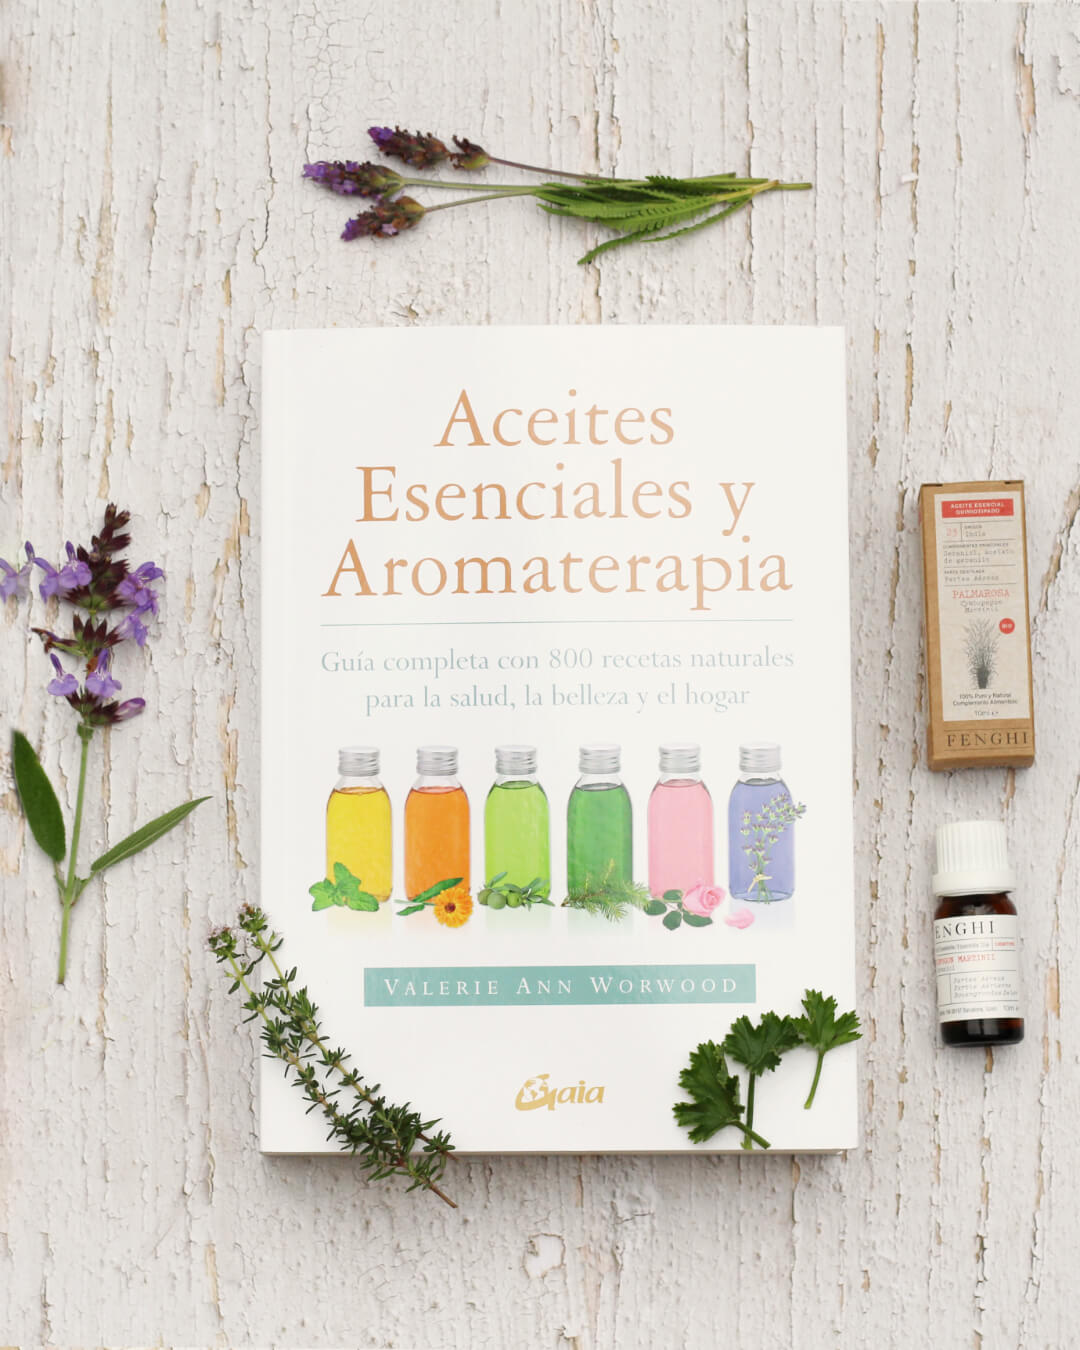 Aceites esenciales y aromaterapia – Fenghi